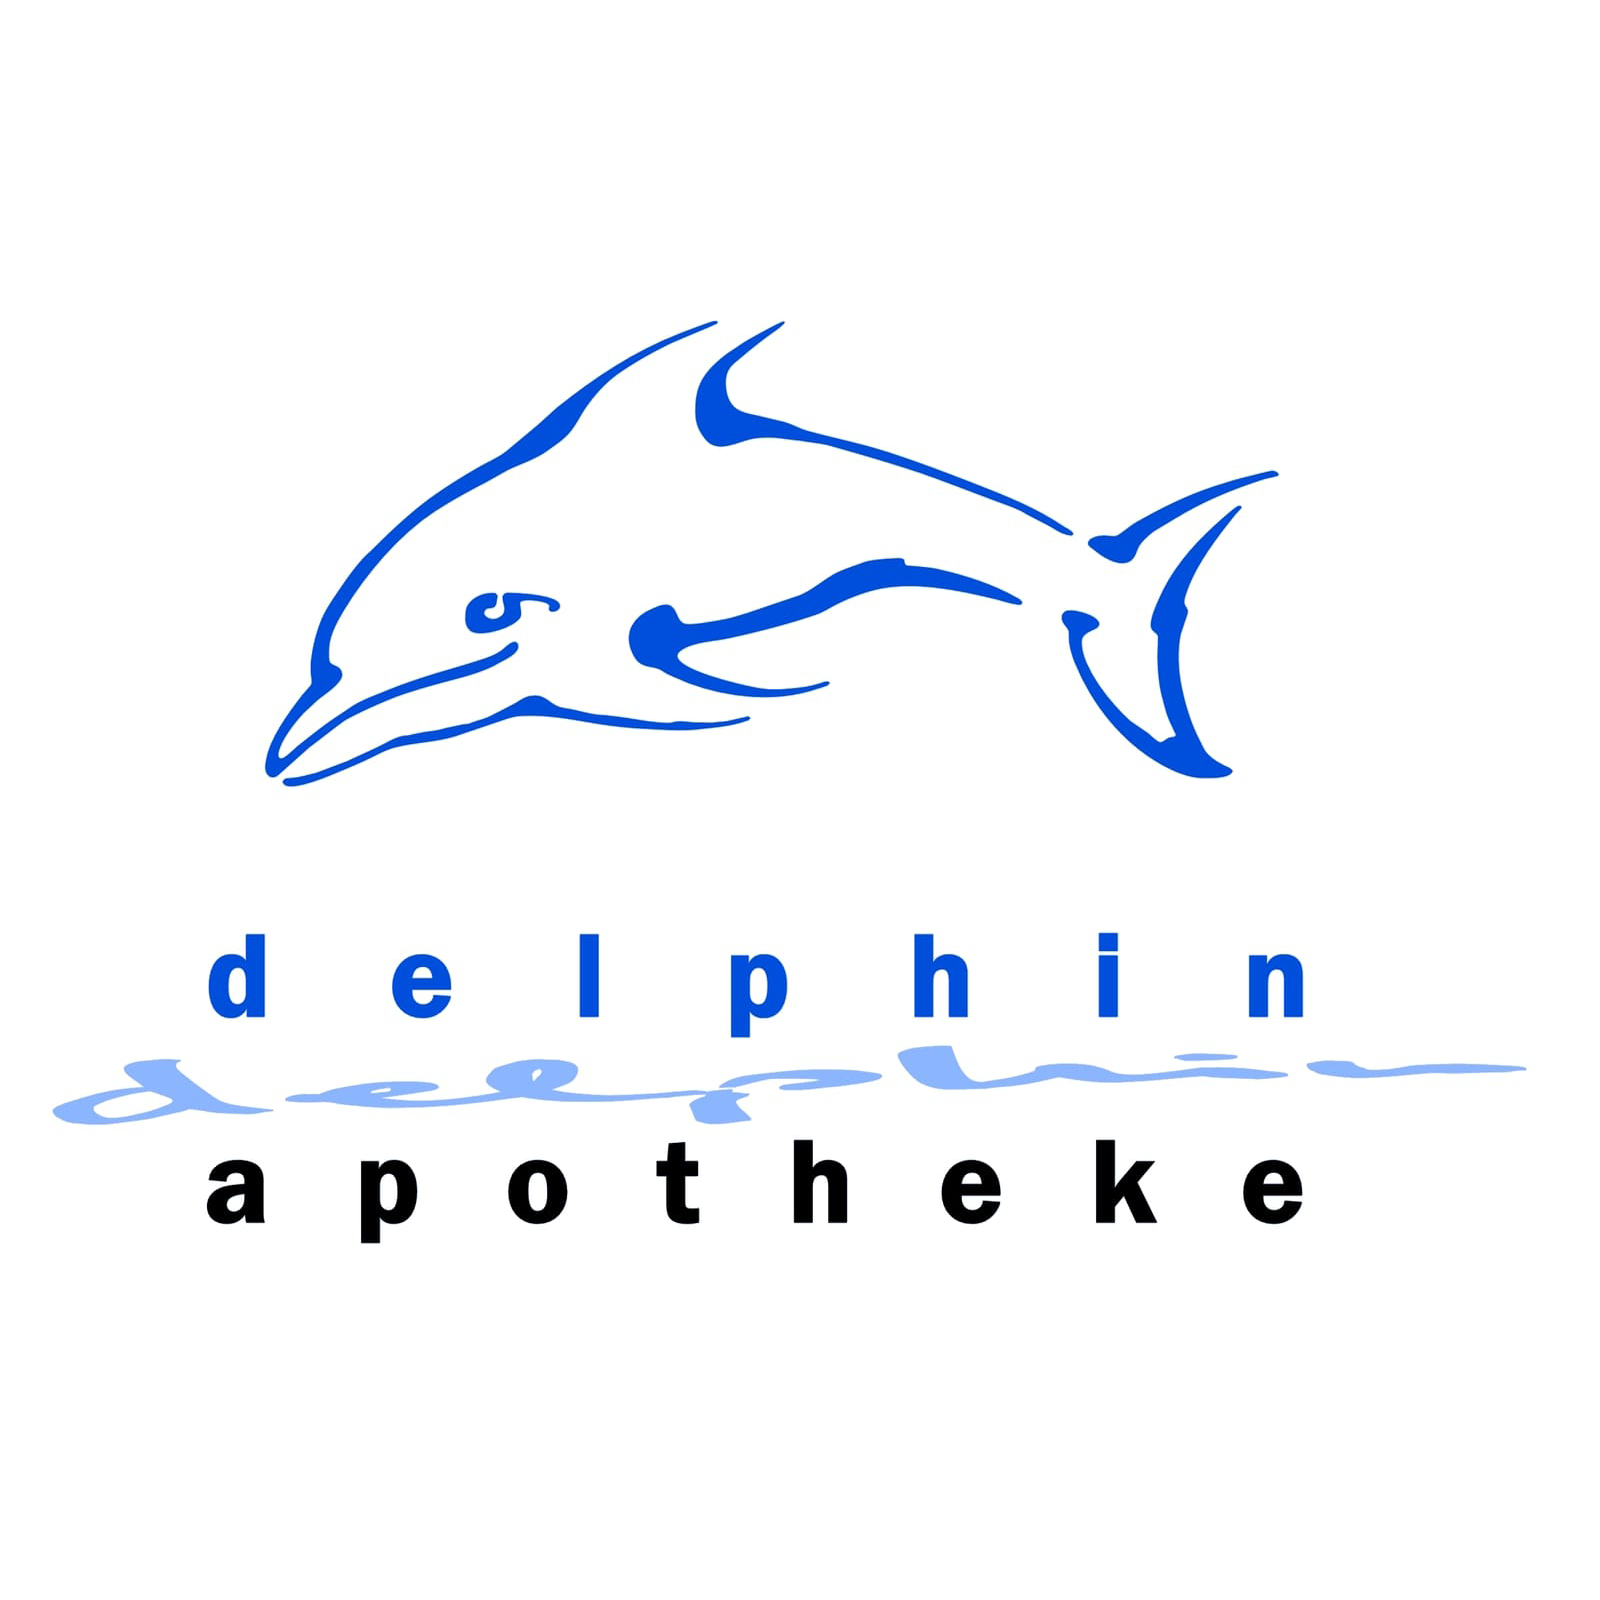 Logo Logo der Delphin-Apotheke